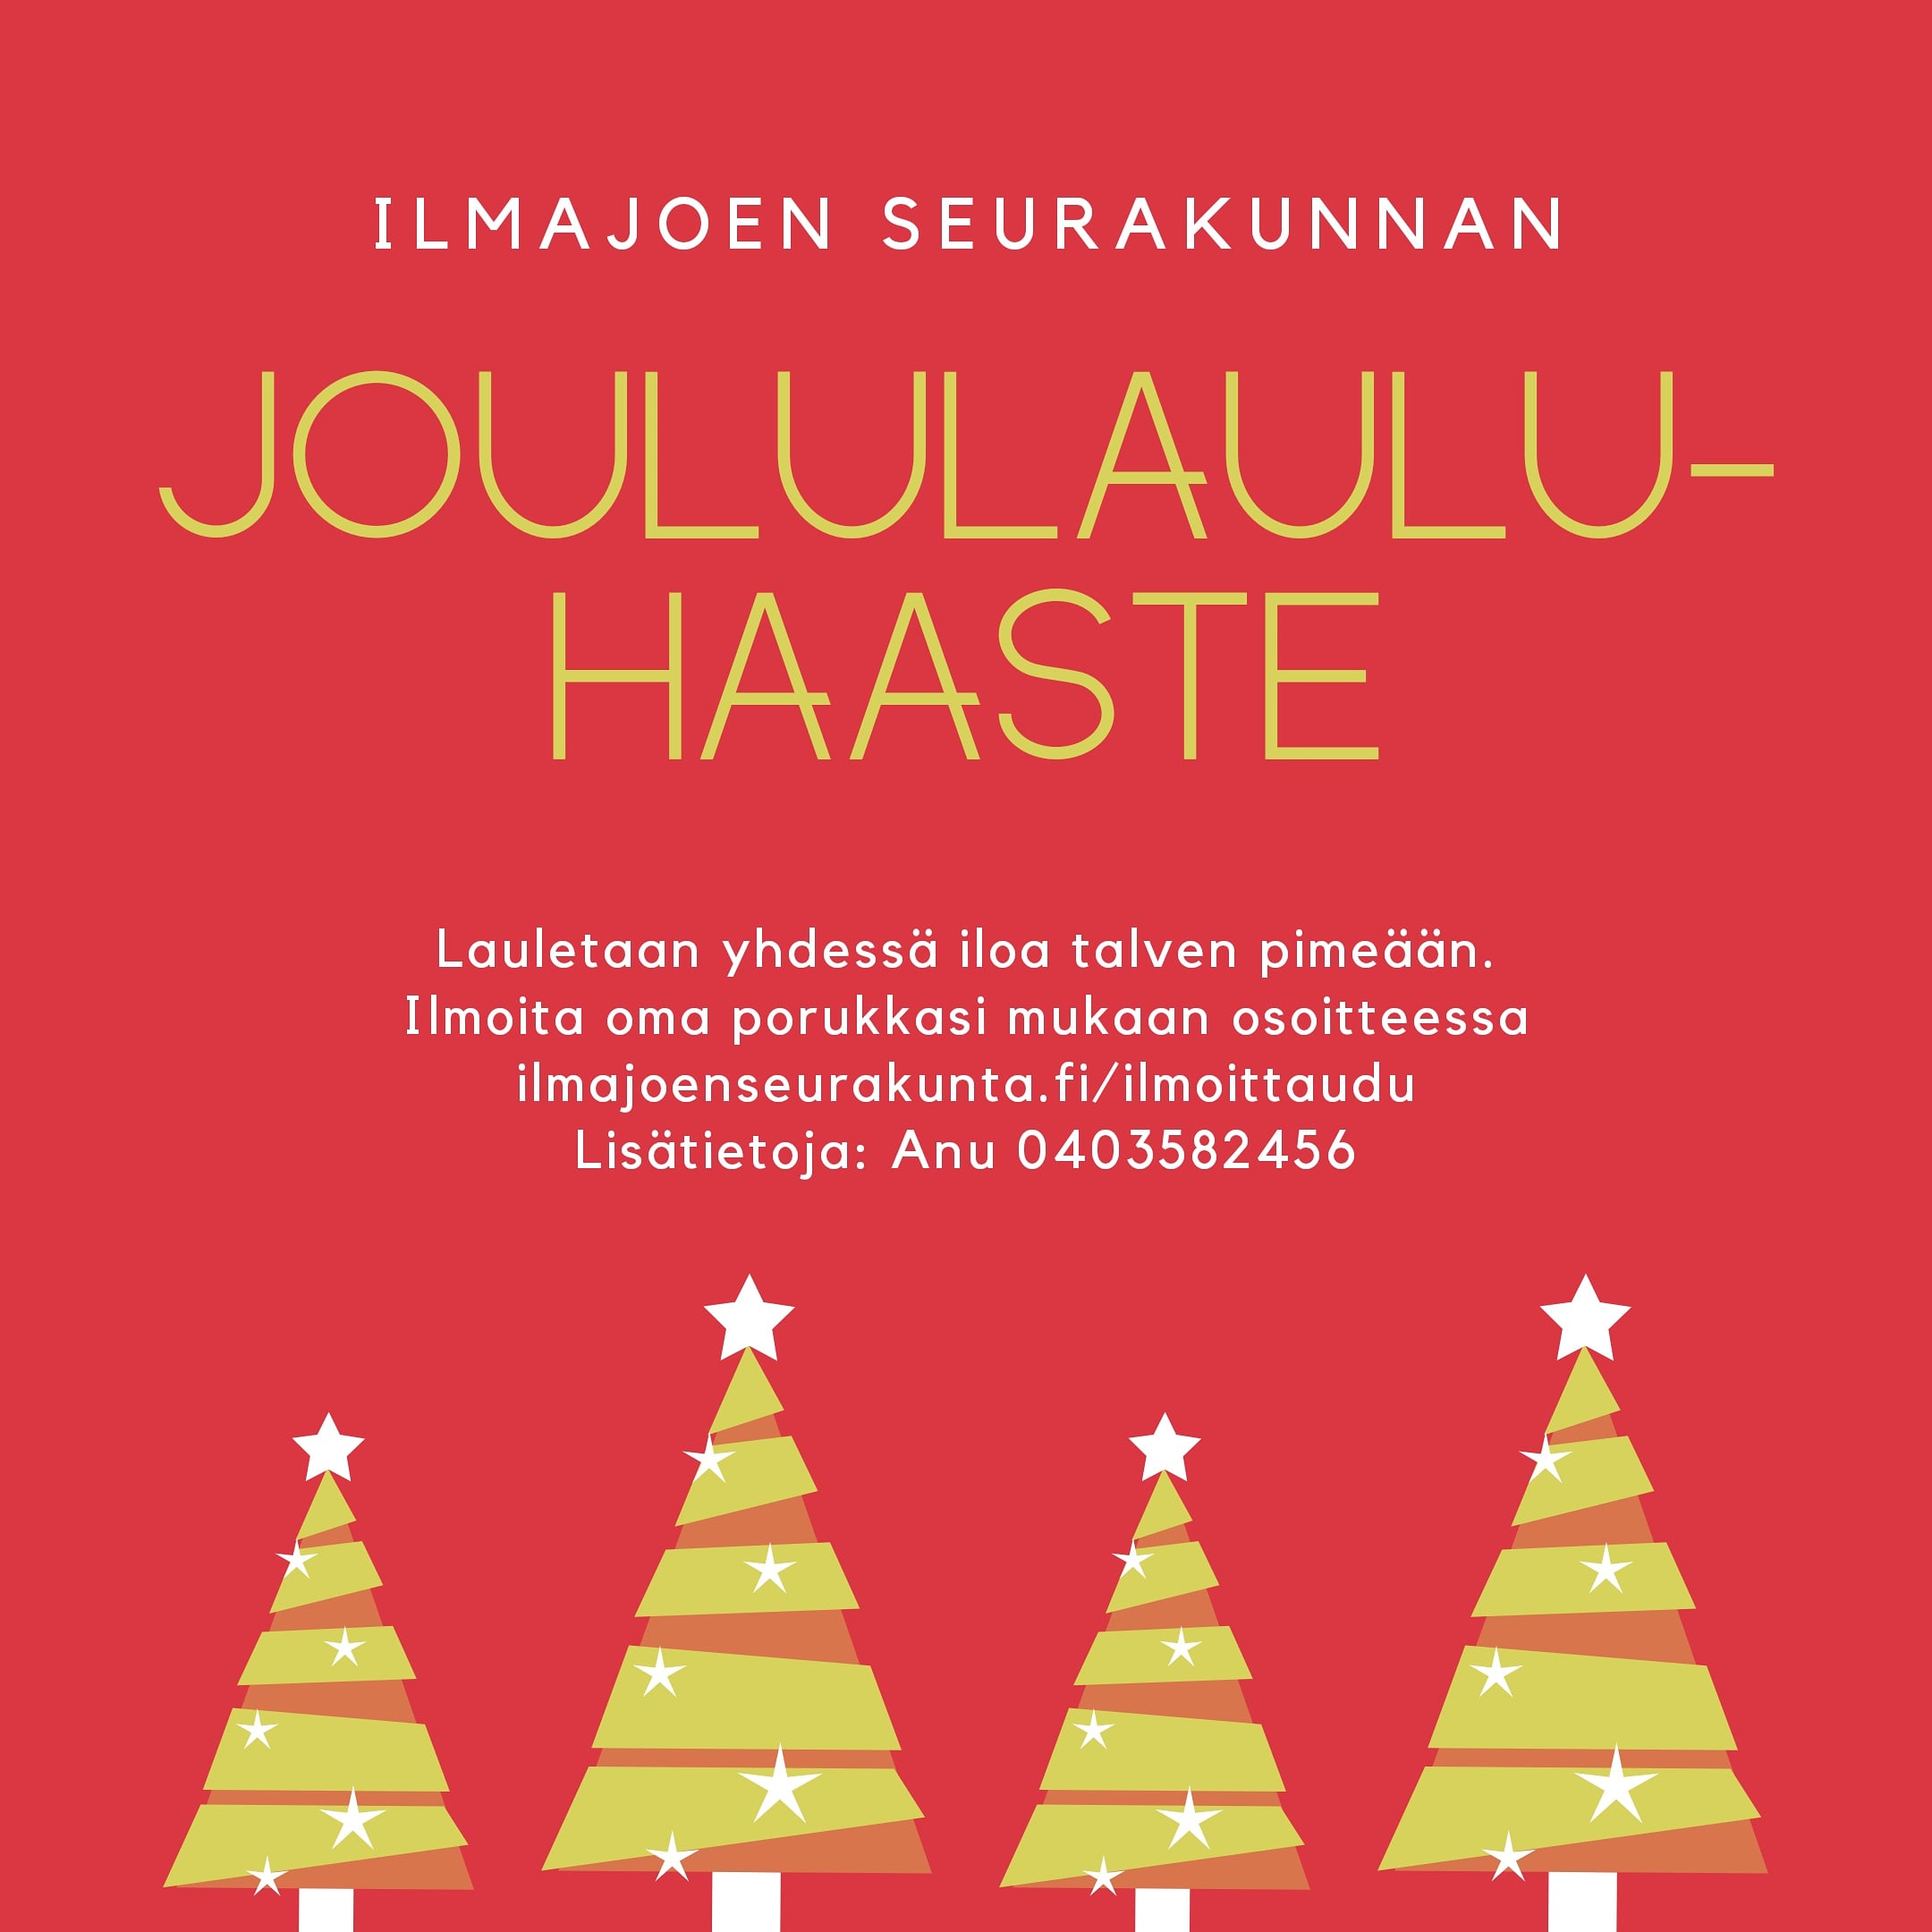 Ilmajoen seurakunnan joululauluhaaste. Lauletaan yhdessä iloa talven pimeään.  Punaisella taustalla neljä keltaista joulukuusta.